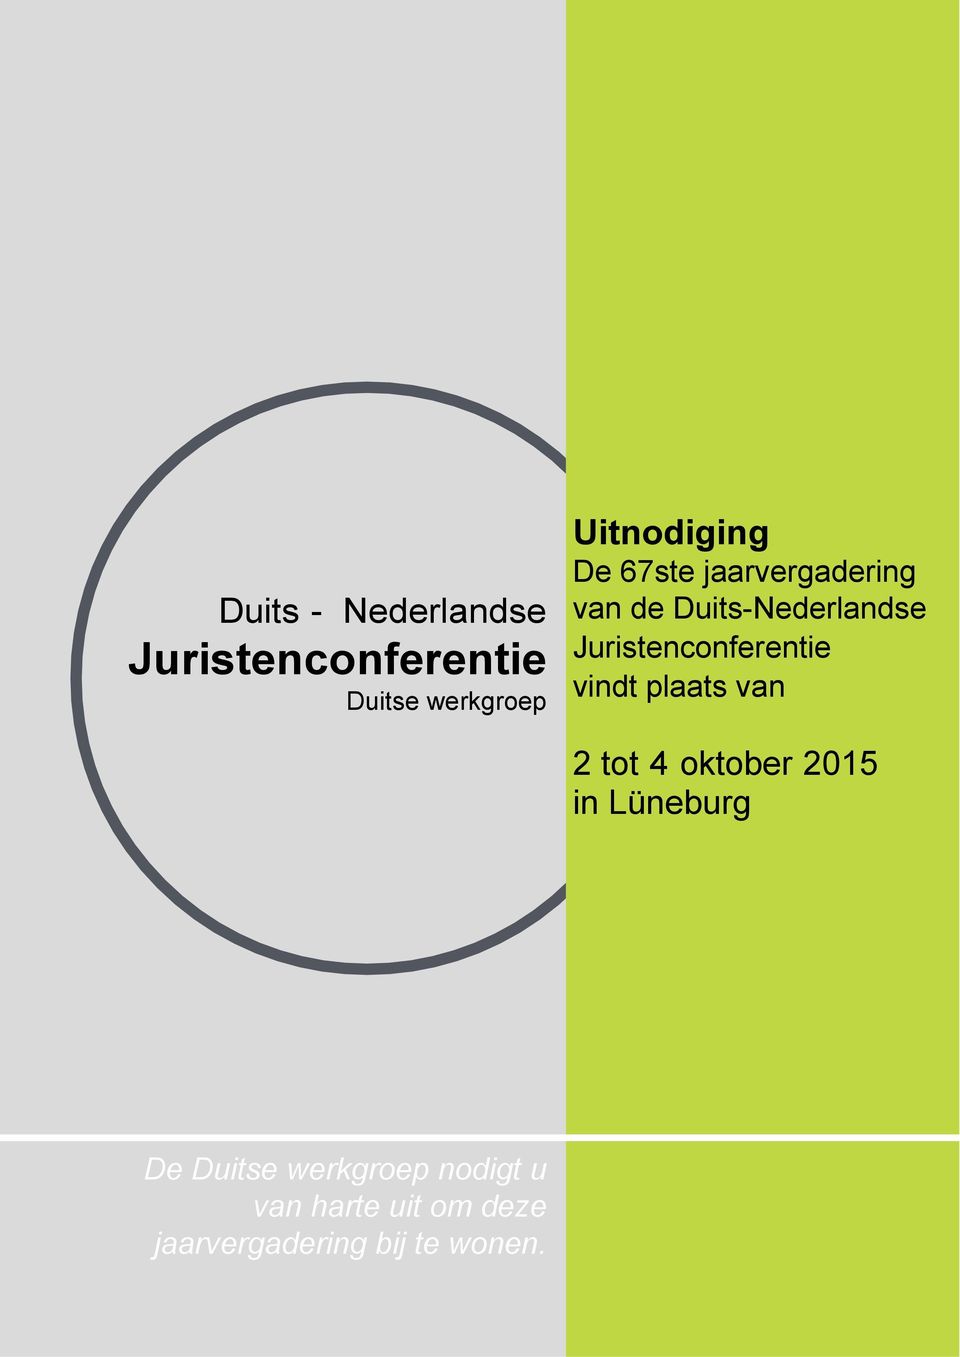 Juristenconferentie vindt plaats van 2 tot 4 oktober 2015 in